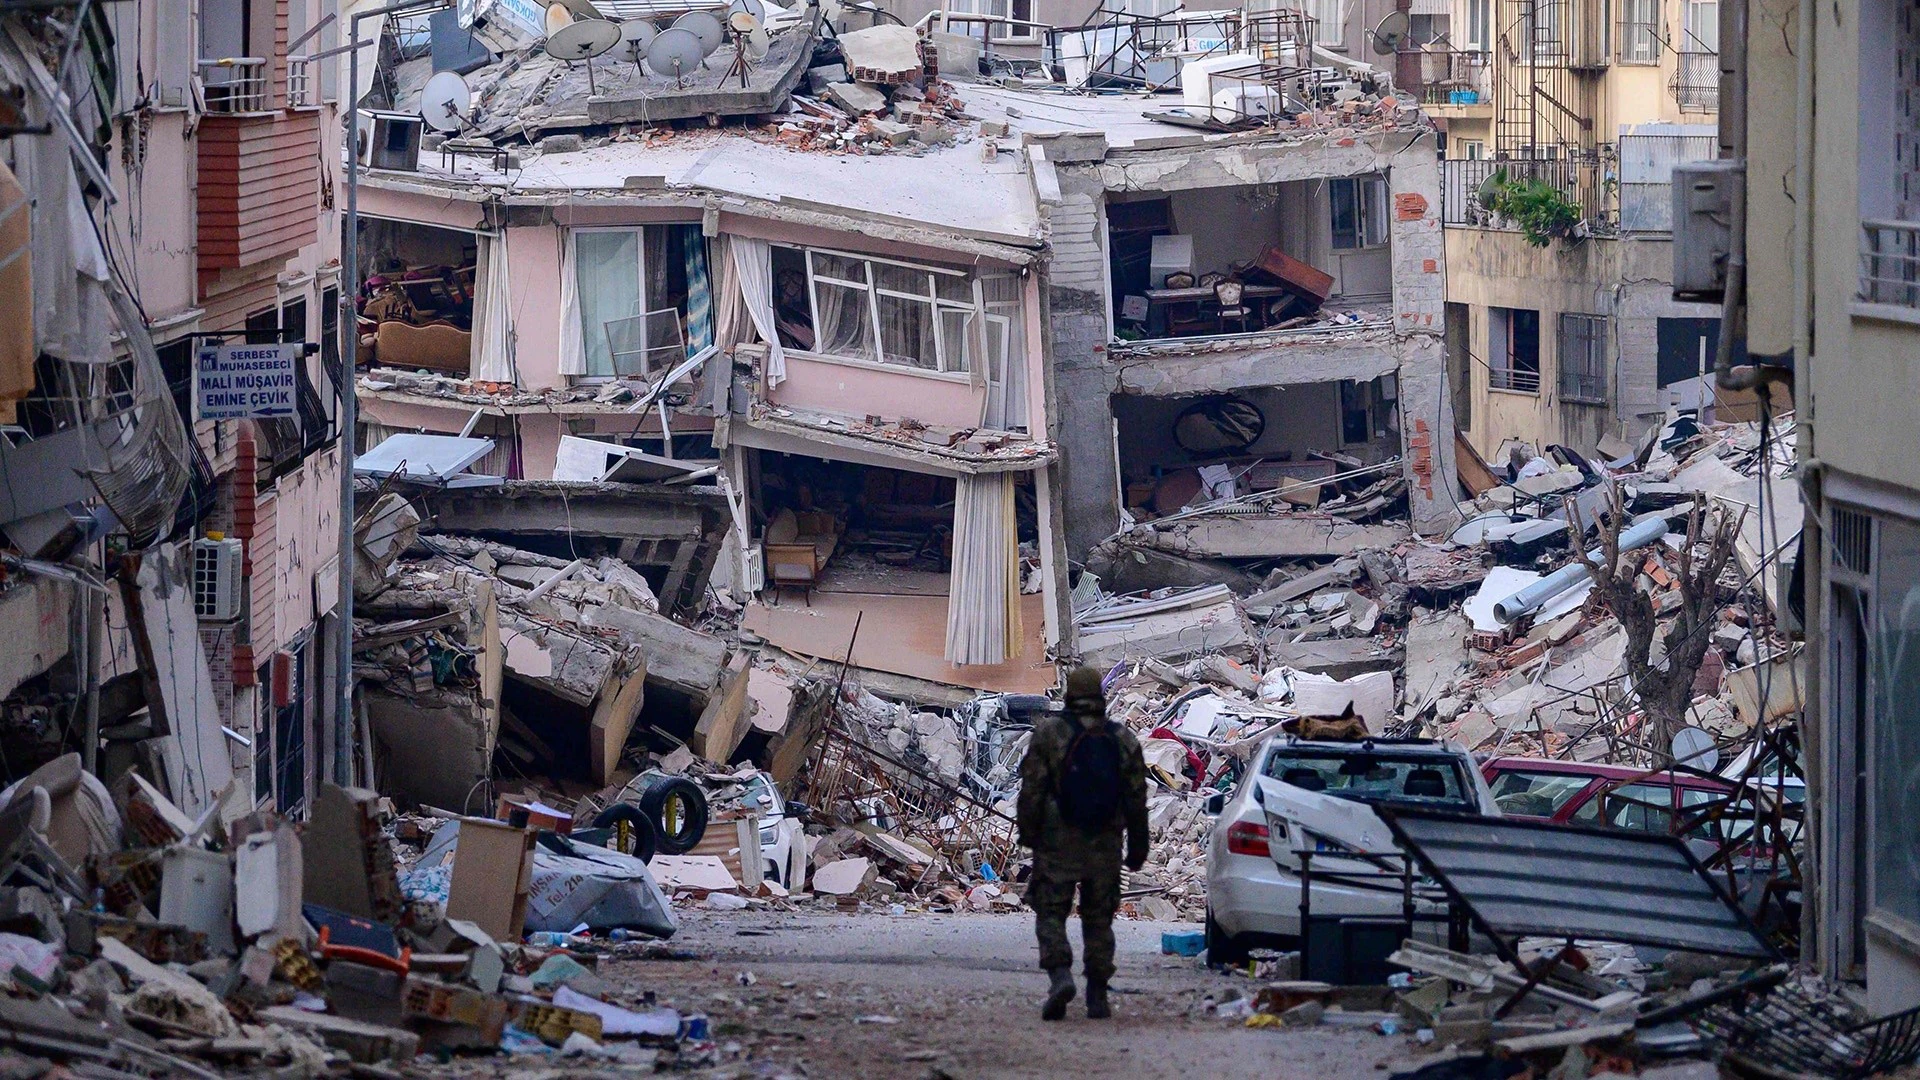 تركيا تعلن عن اعتقال 130 مقاول بناء بسبب غش مواد البناء مما تسبب في انهيار آلاف المنازل في الزلزال